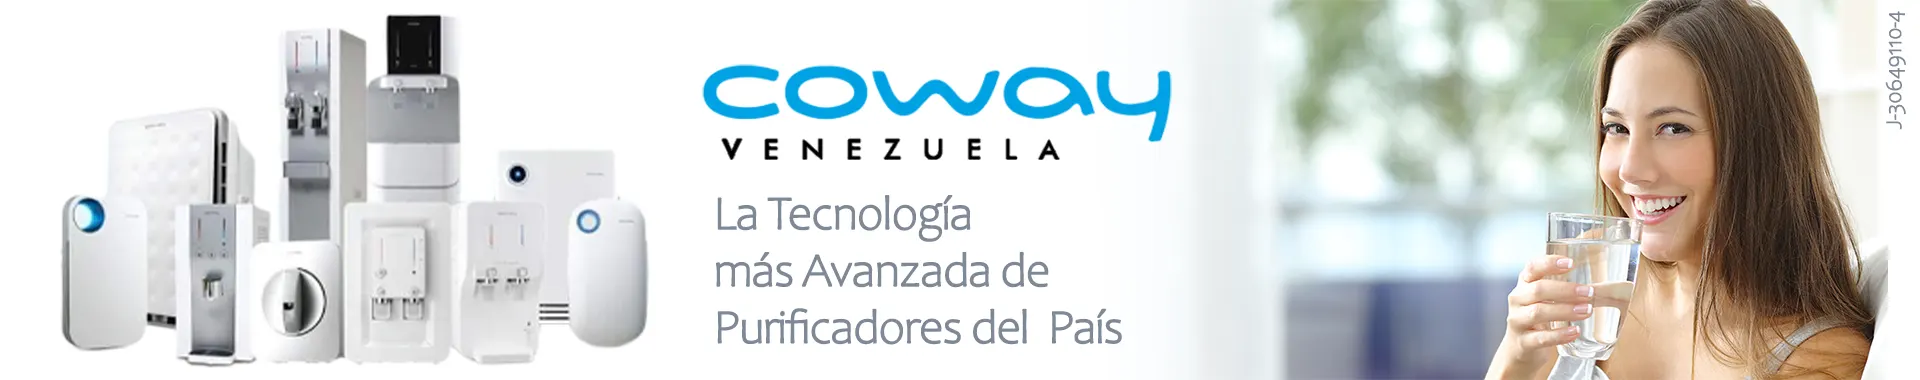 Imagen 2 del perfil de Coway Venezuela